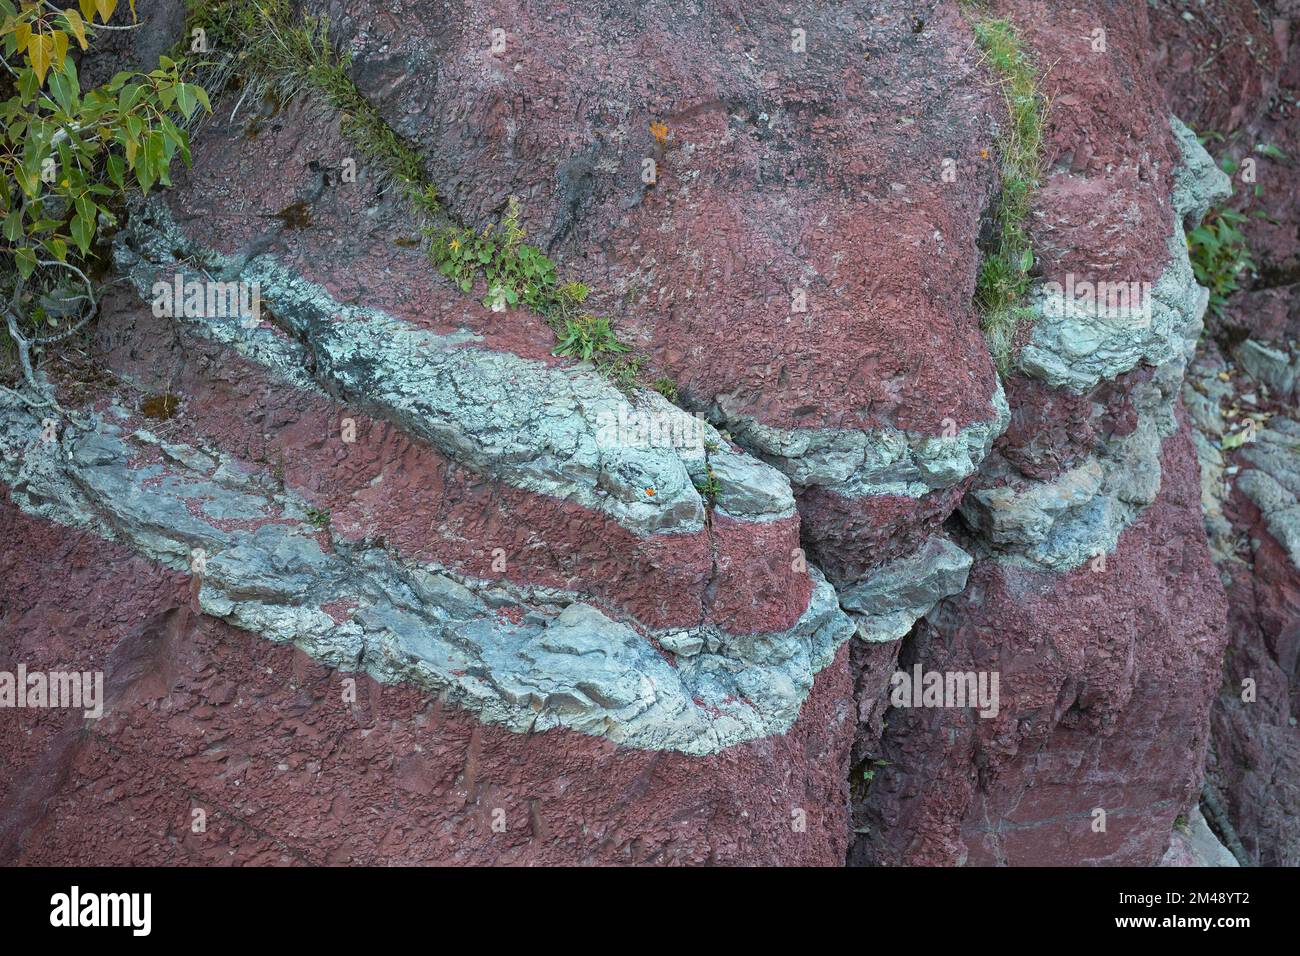 Couches sédimentaires d'argilite dans Red Rock Canyon, Waterton, Canada. La couleur rouge est du fer oxydé. Les bandes vertes contiennent du fer non oxydé Banque D'Images